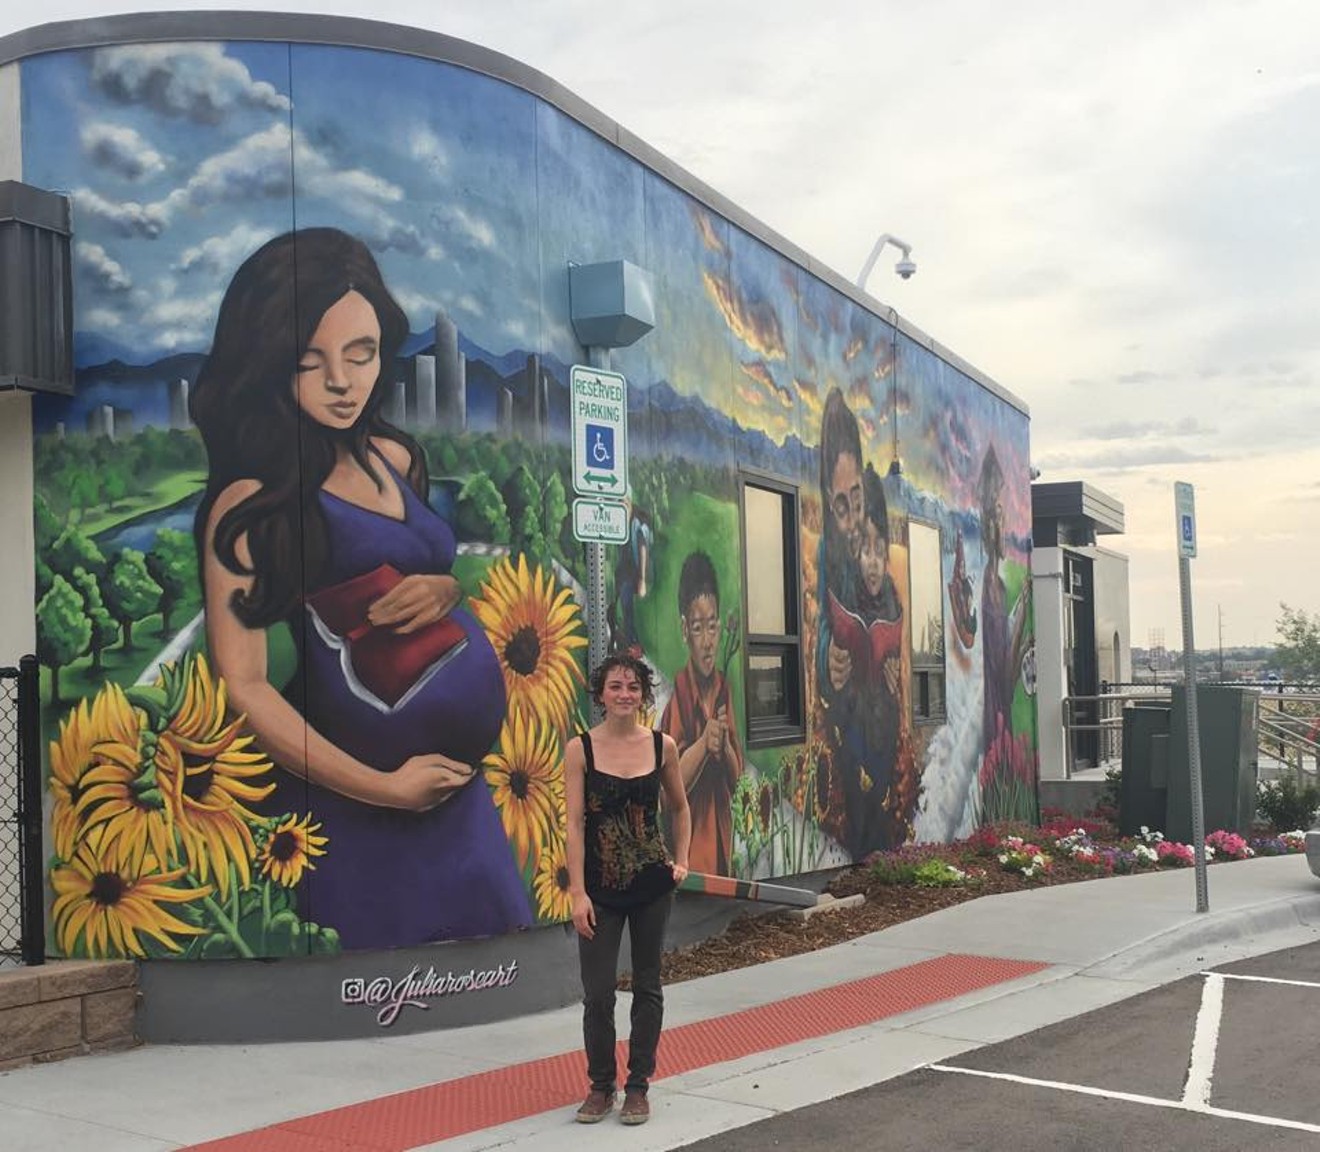 Painter Julia Rose Morgan (@juliaroseart) poses in front of her mural.